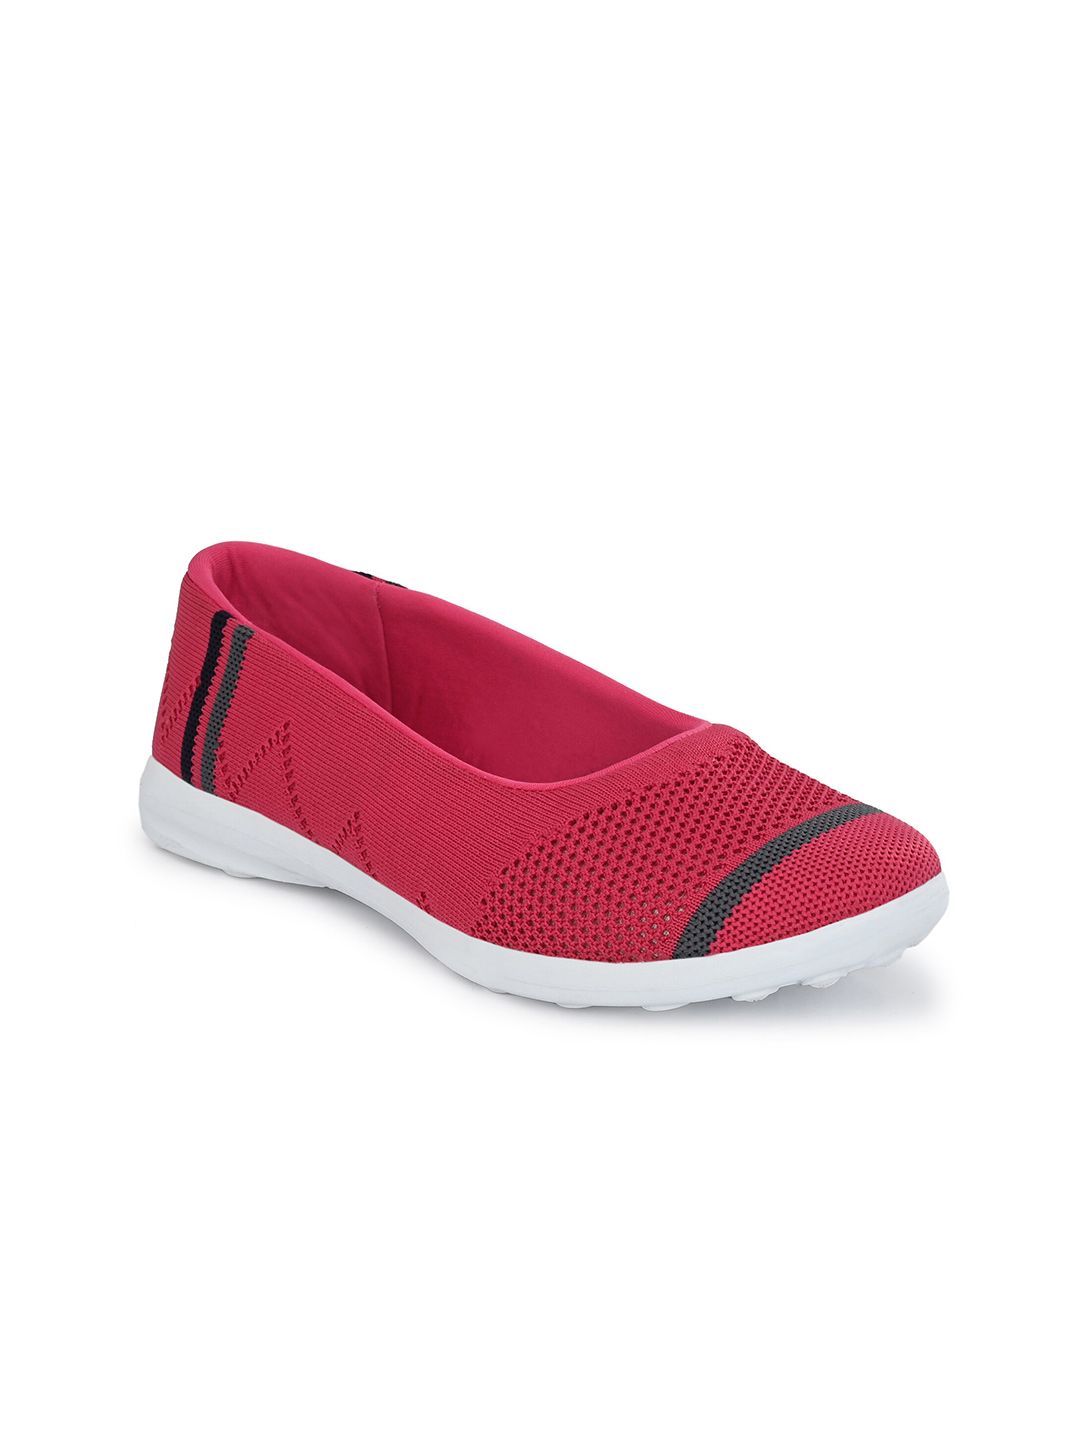 Yuuki Women Pink Mesh Walking Non-Marking Shoes Price in India